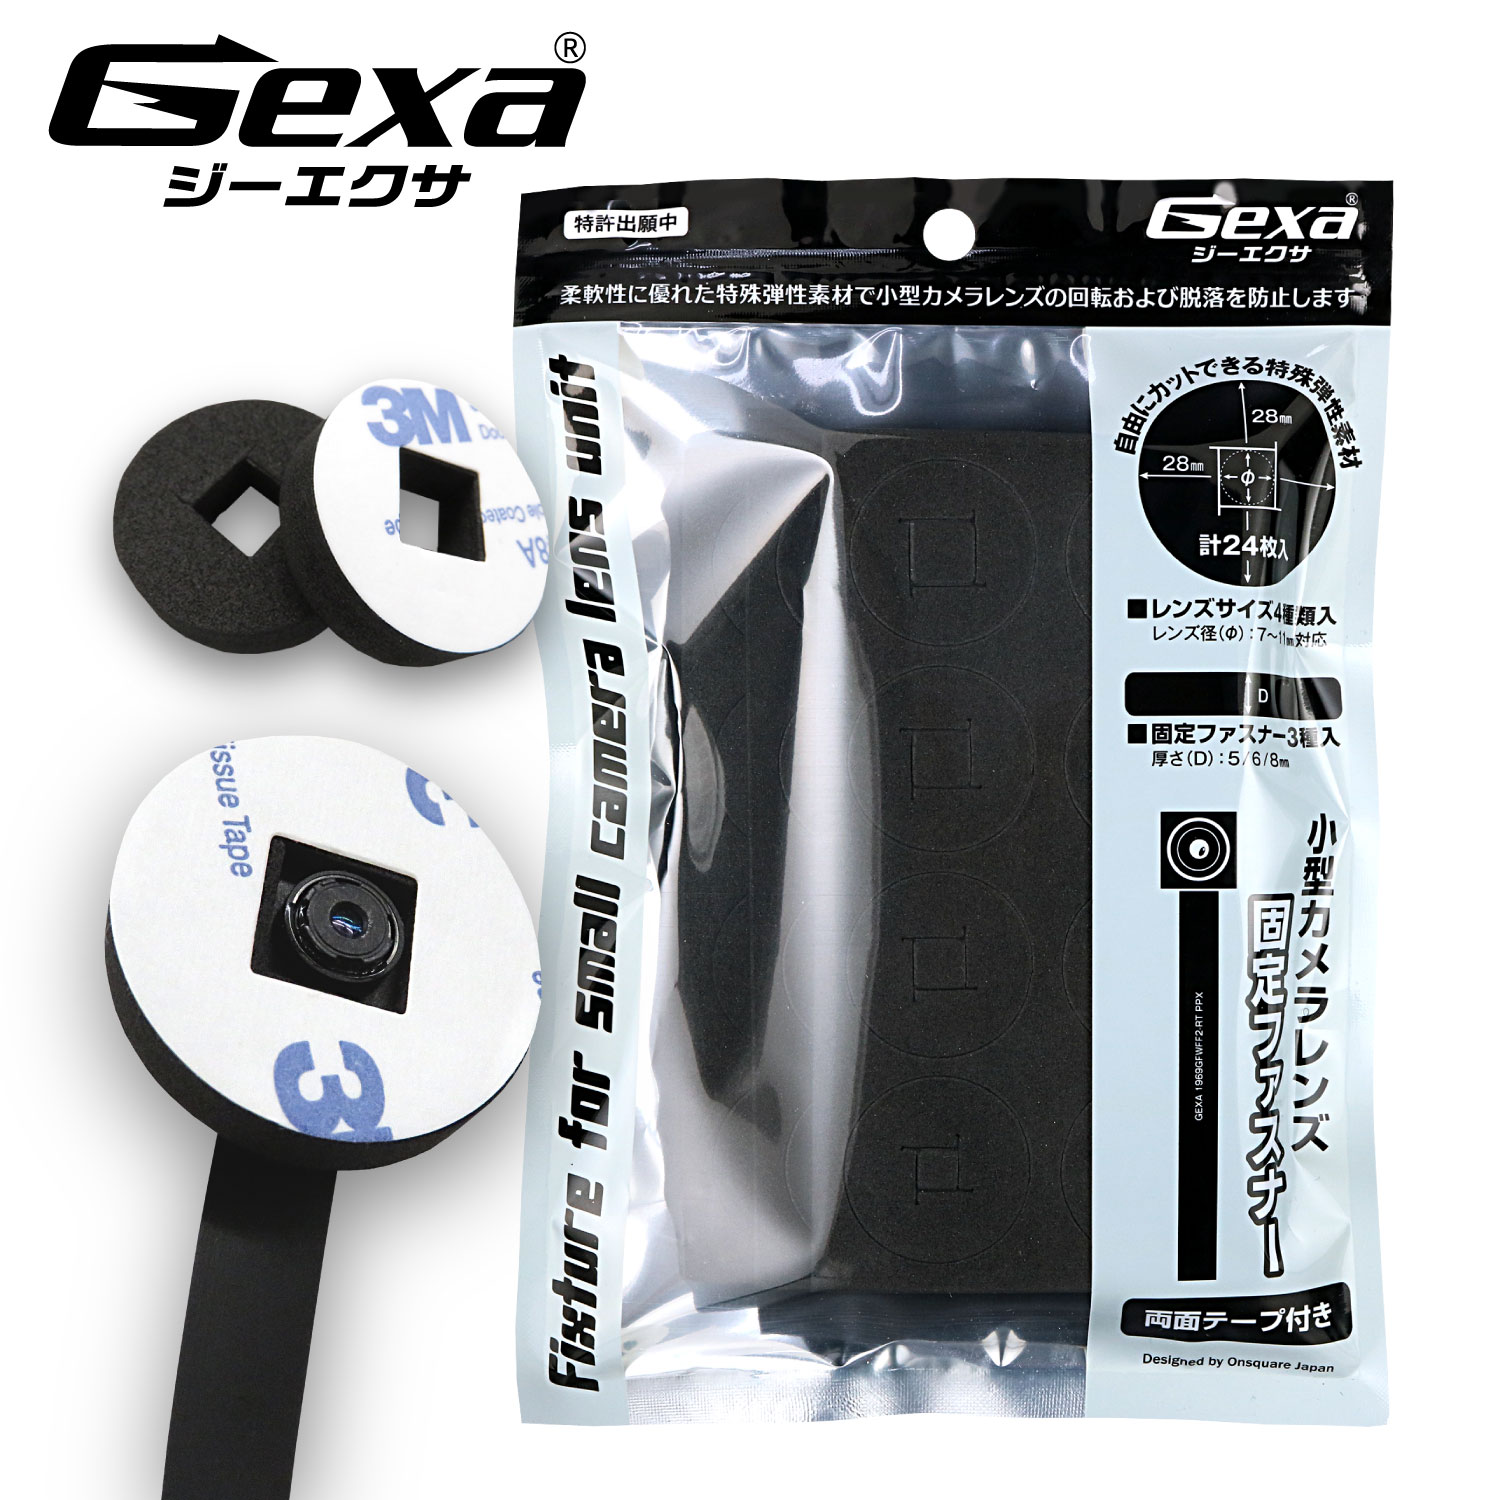 ジイエクサ(Gexa) フレキシブルレンズ 固定ファスナー 小型カメラ 基板カメラ 業務用カメラツール GA-001B